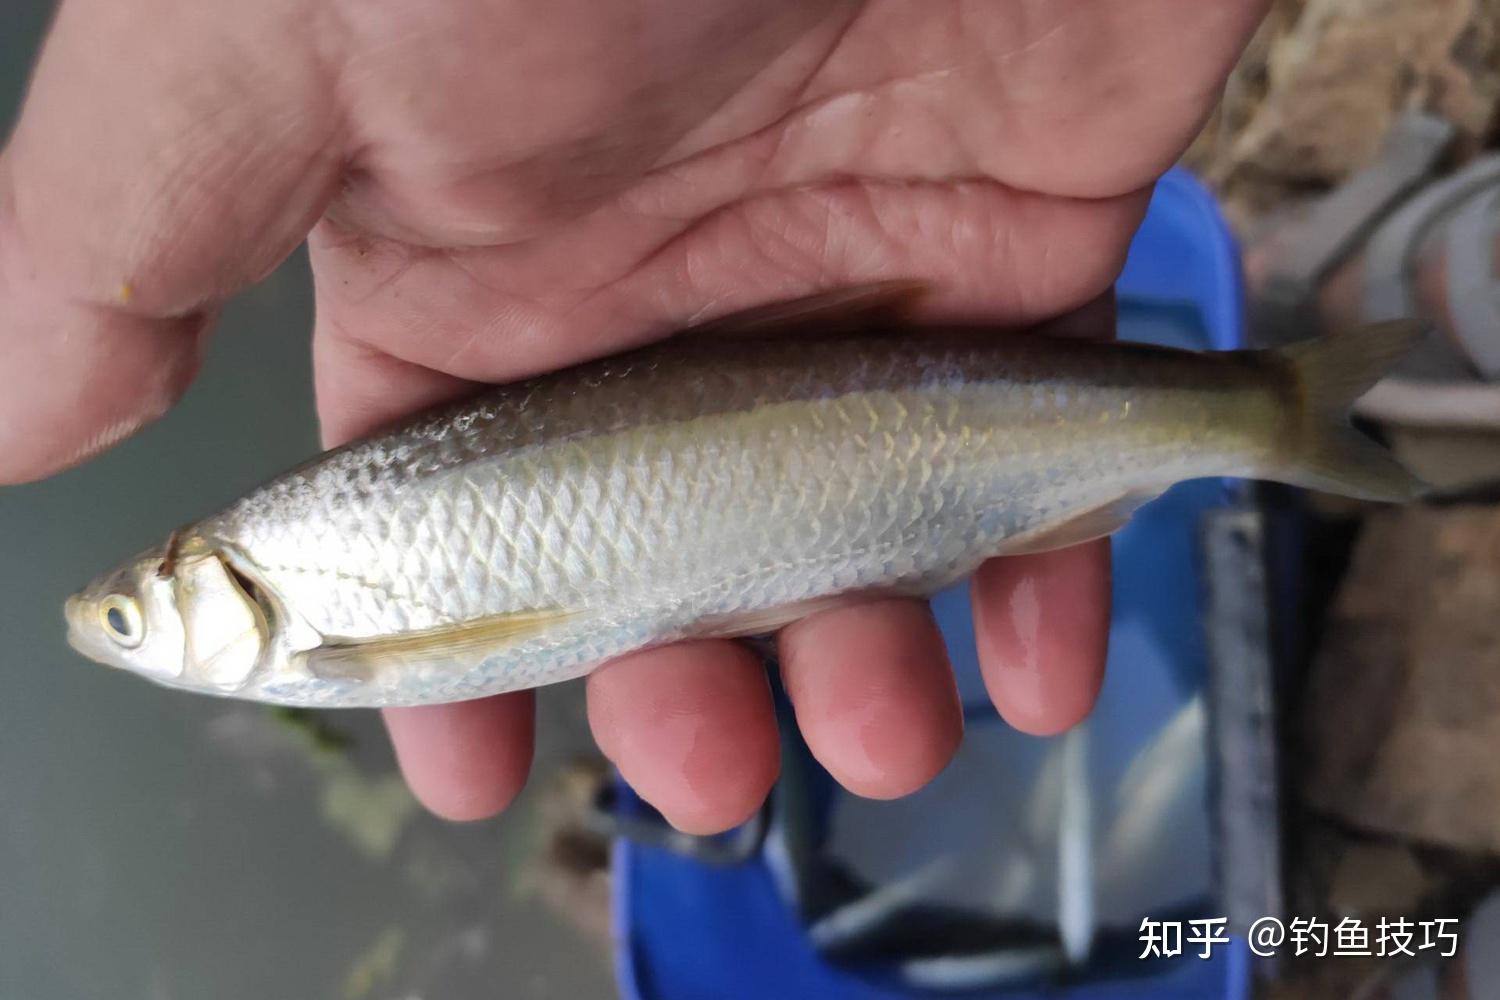 白条图鉴——银飘鱼Pseudolaubuca sinensis - 哔哩哔哩